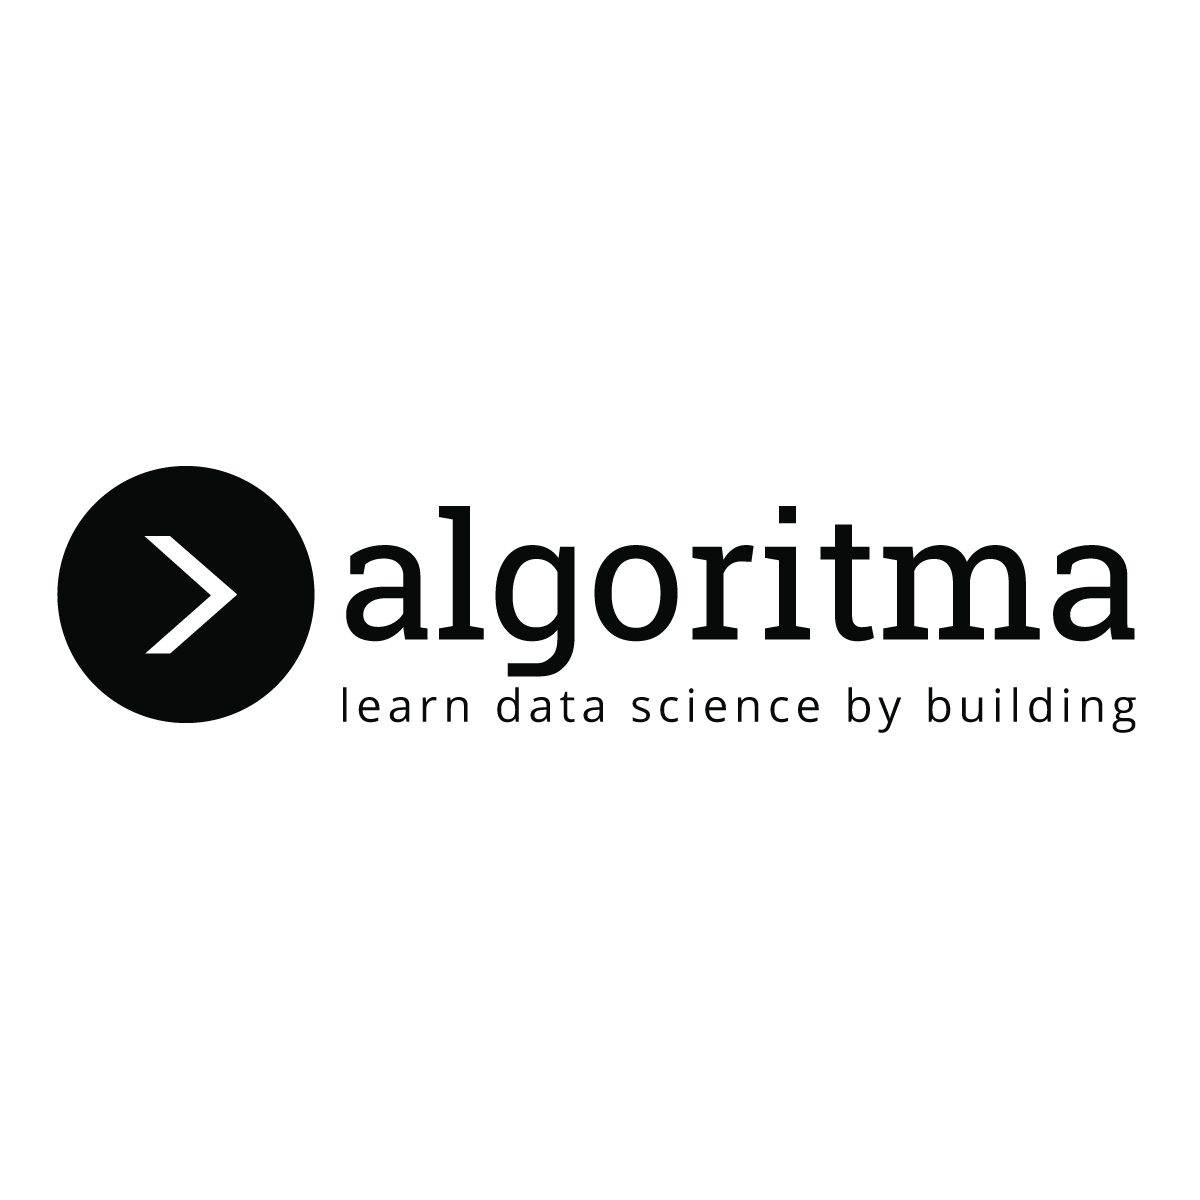 PT. Algoritma Data Indonesia